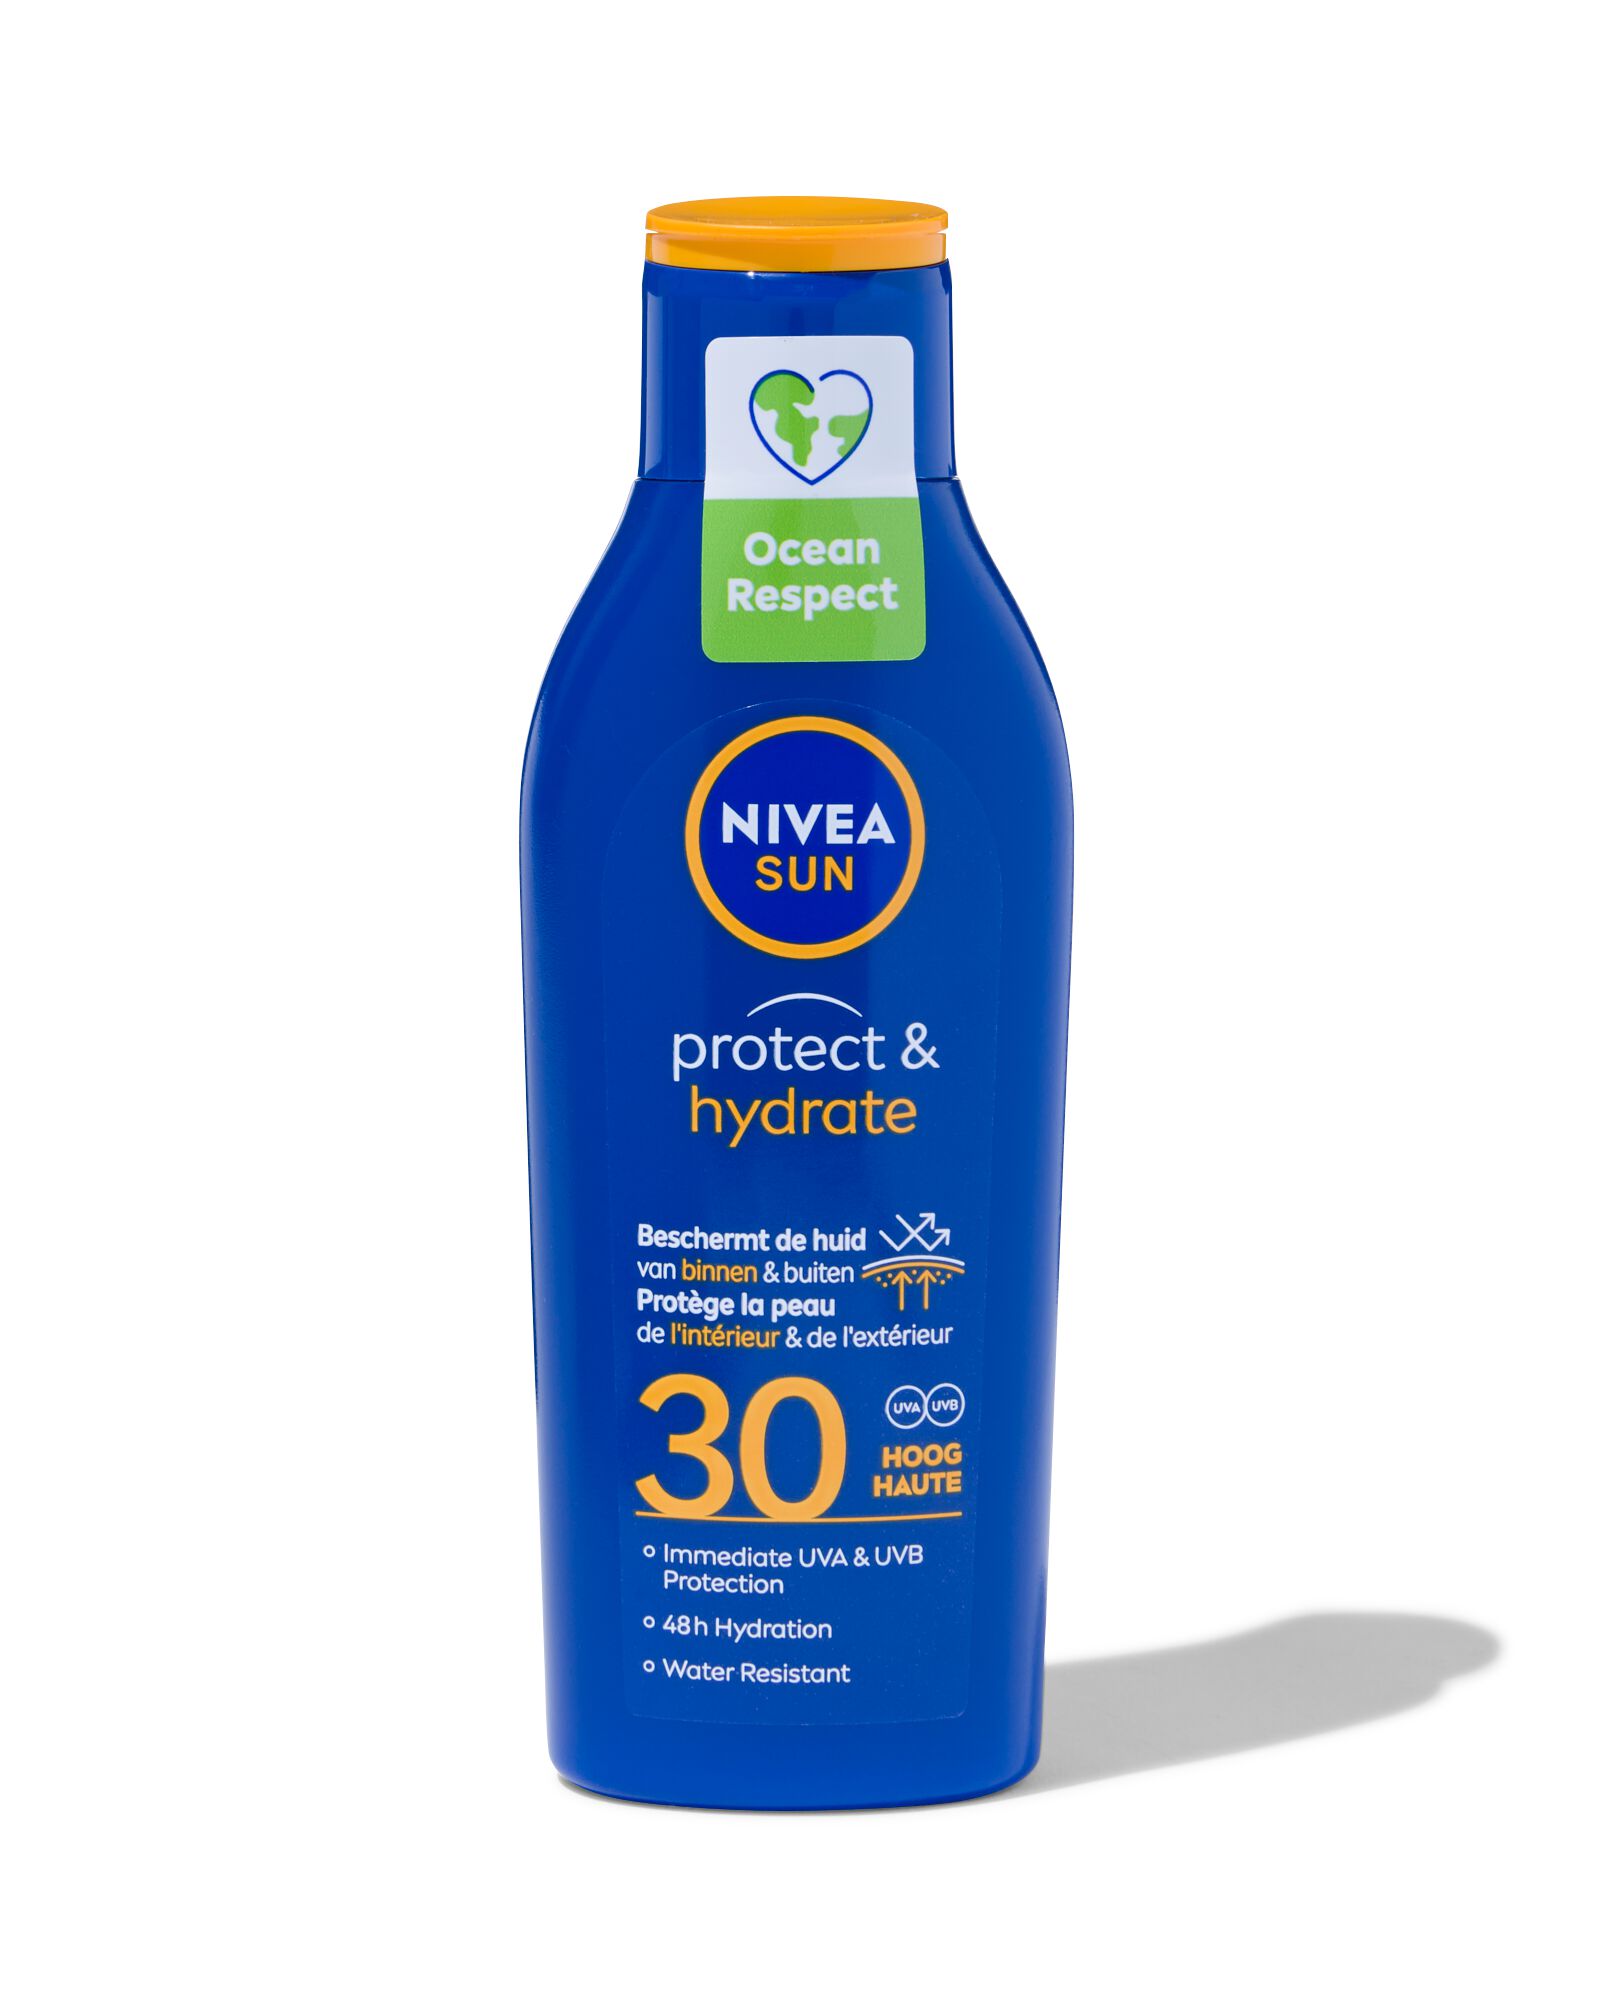 NIVEA SUN protect & hydrate zonnemelk SPF30 200ml - 11610906 - HEMA